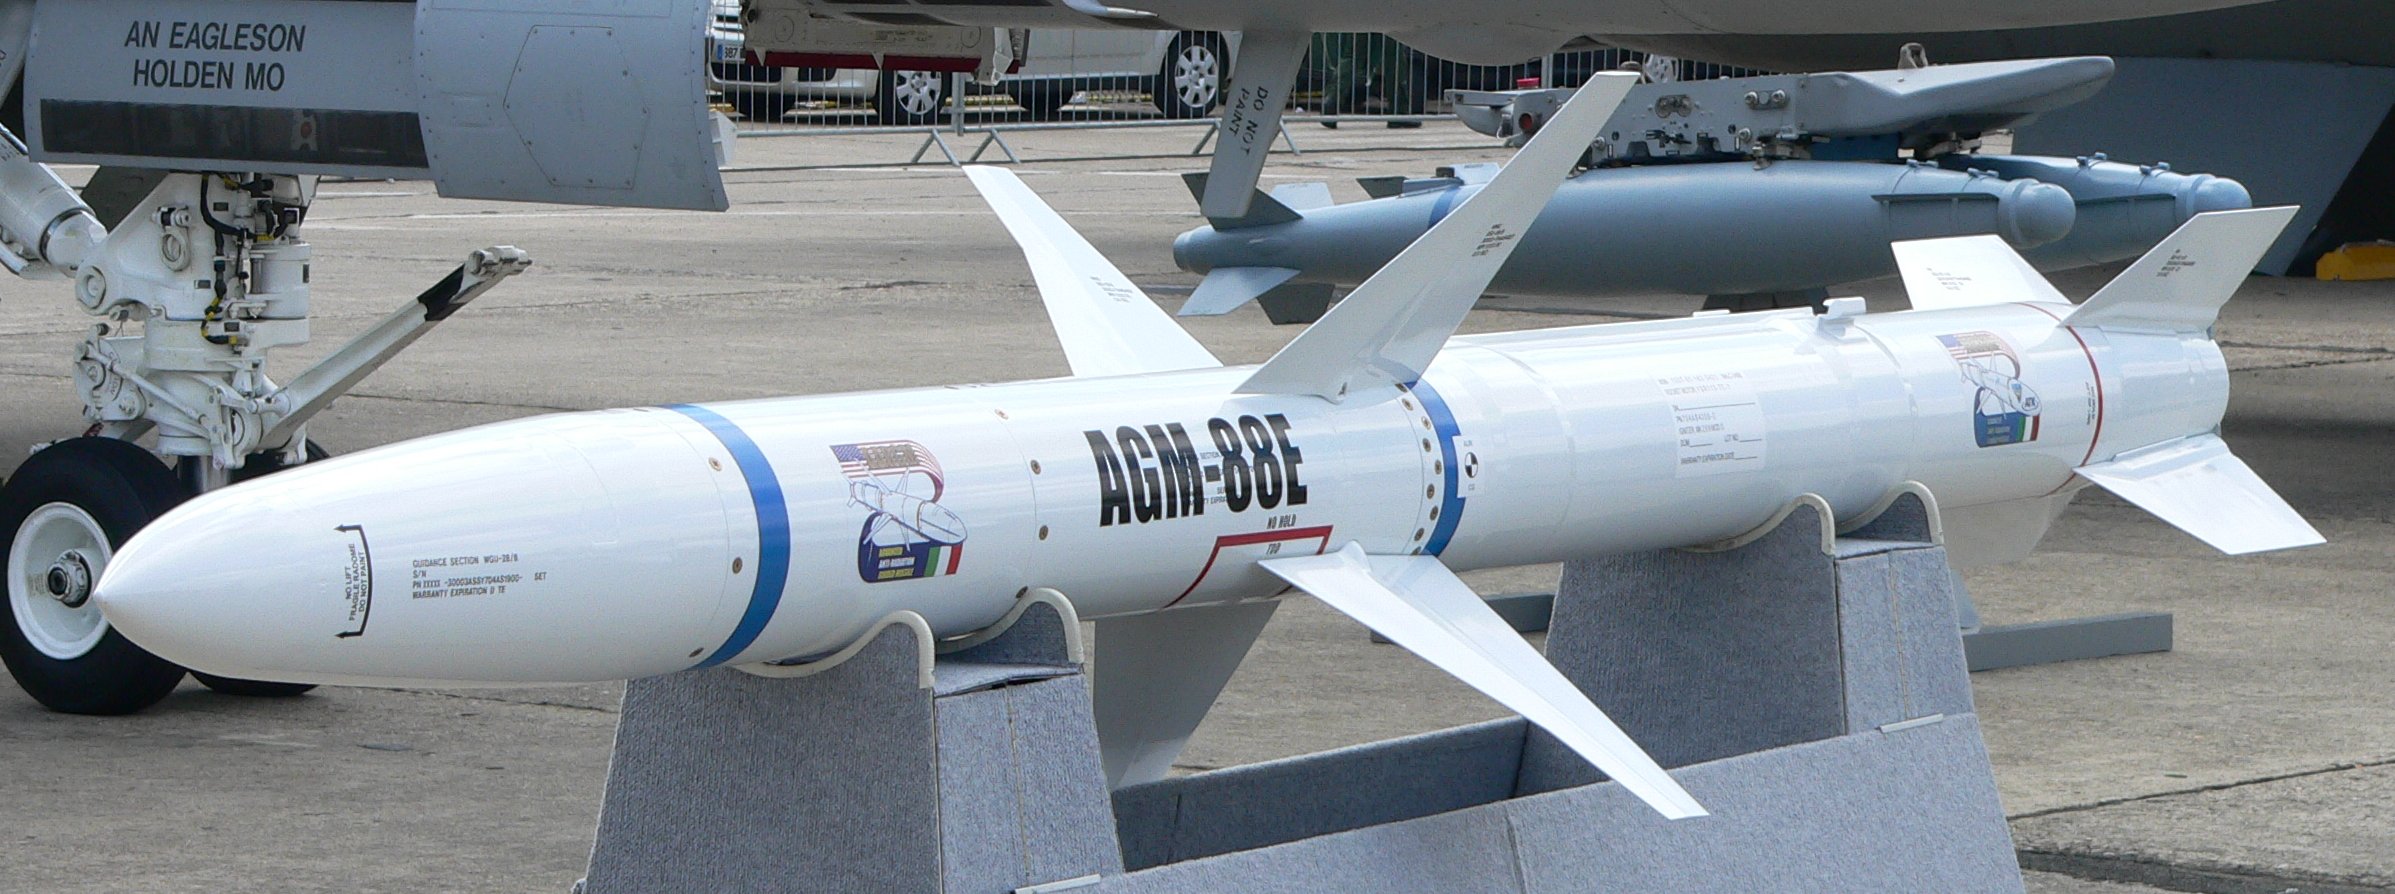 AARGM_missile|